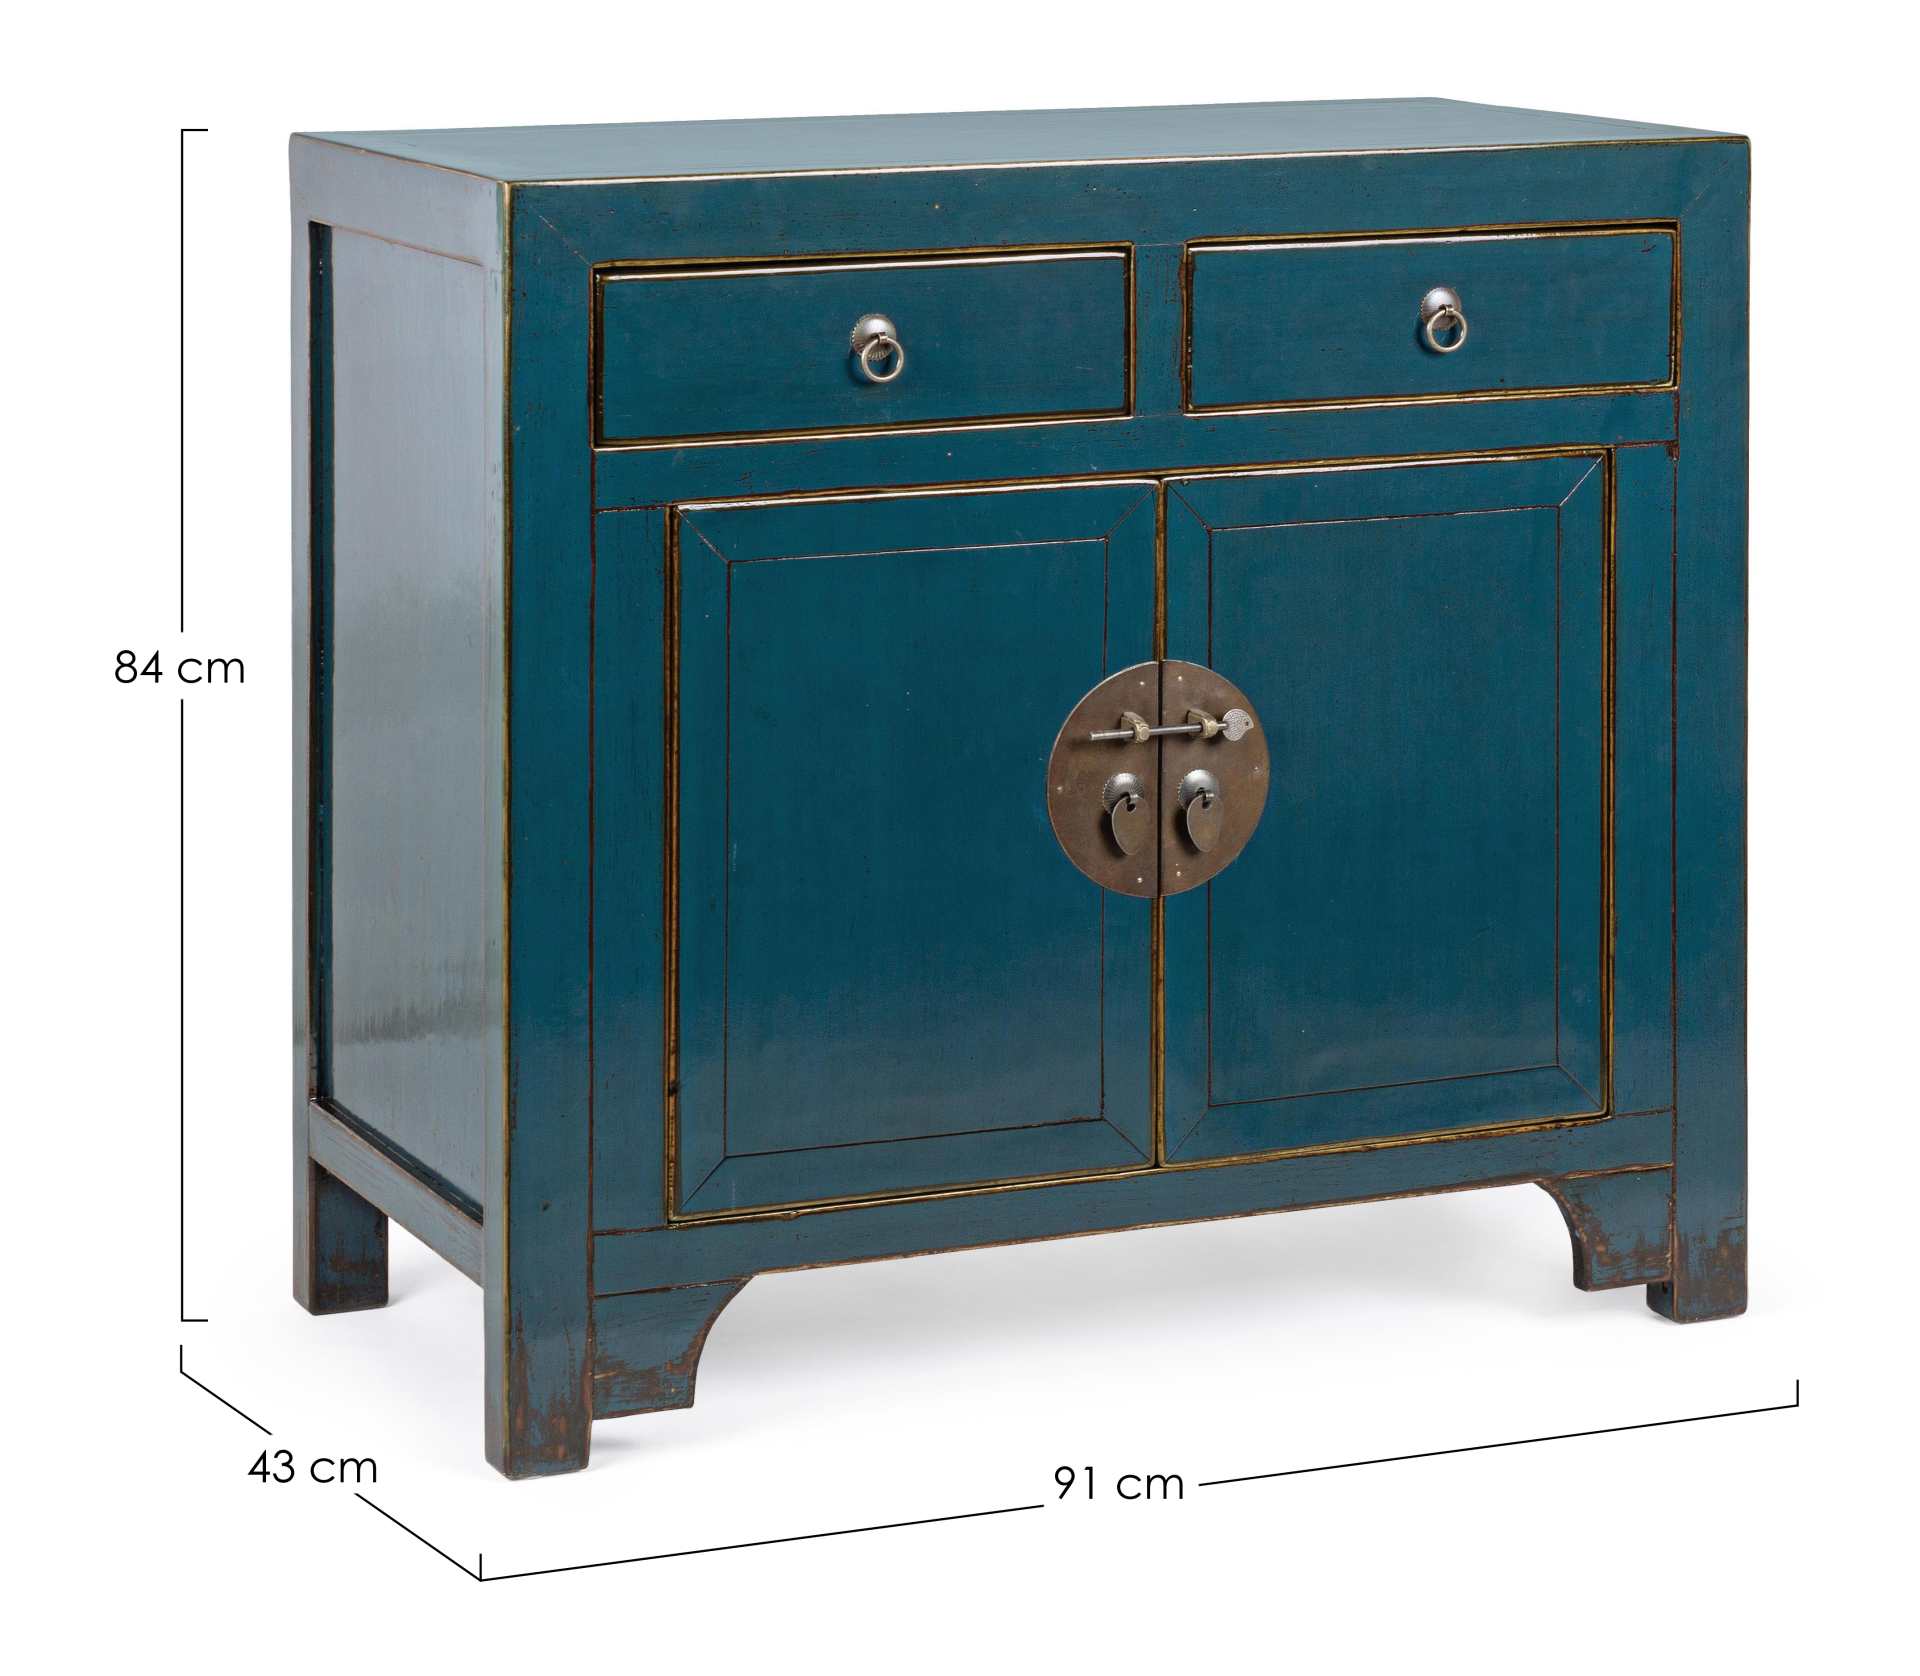 Die Kommode Jinan überzeugt mit ihrem klassischen Design. Gefertigt wurde sie aus Ulmen-Holz, welches einen blauen Farbton besitzt. Das Gestell ist auch aus Ulmen-Holz. Die Kommode verfügt über zwei Türen und zwei Schubladen. Die Breite beträgt 91 cm.